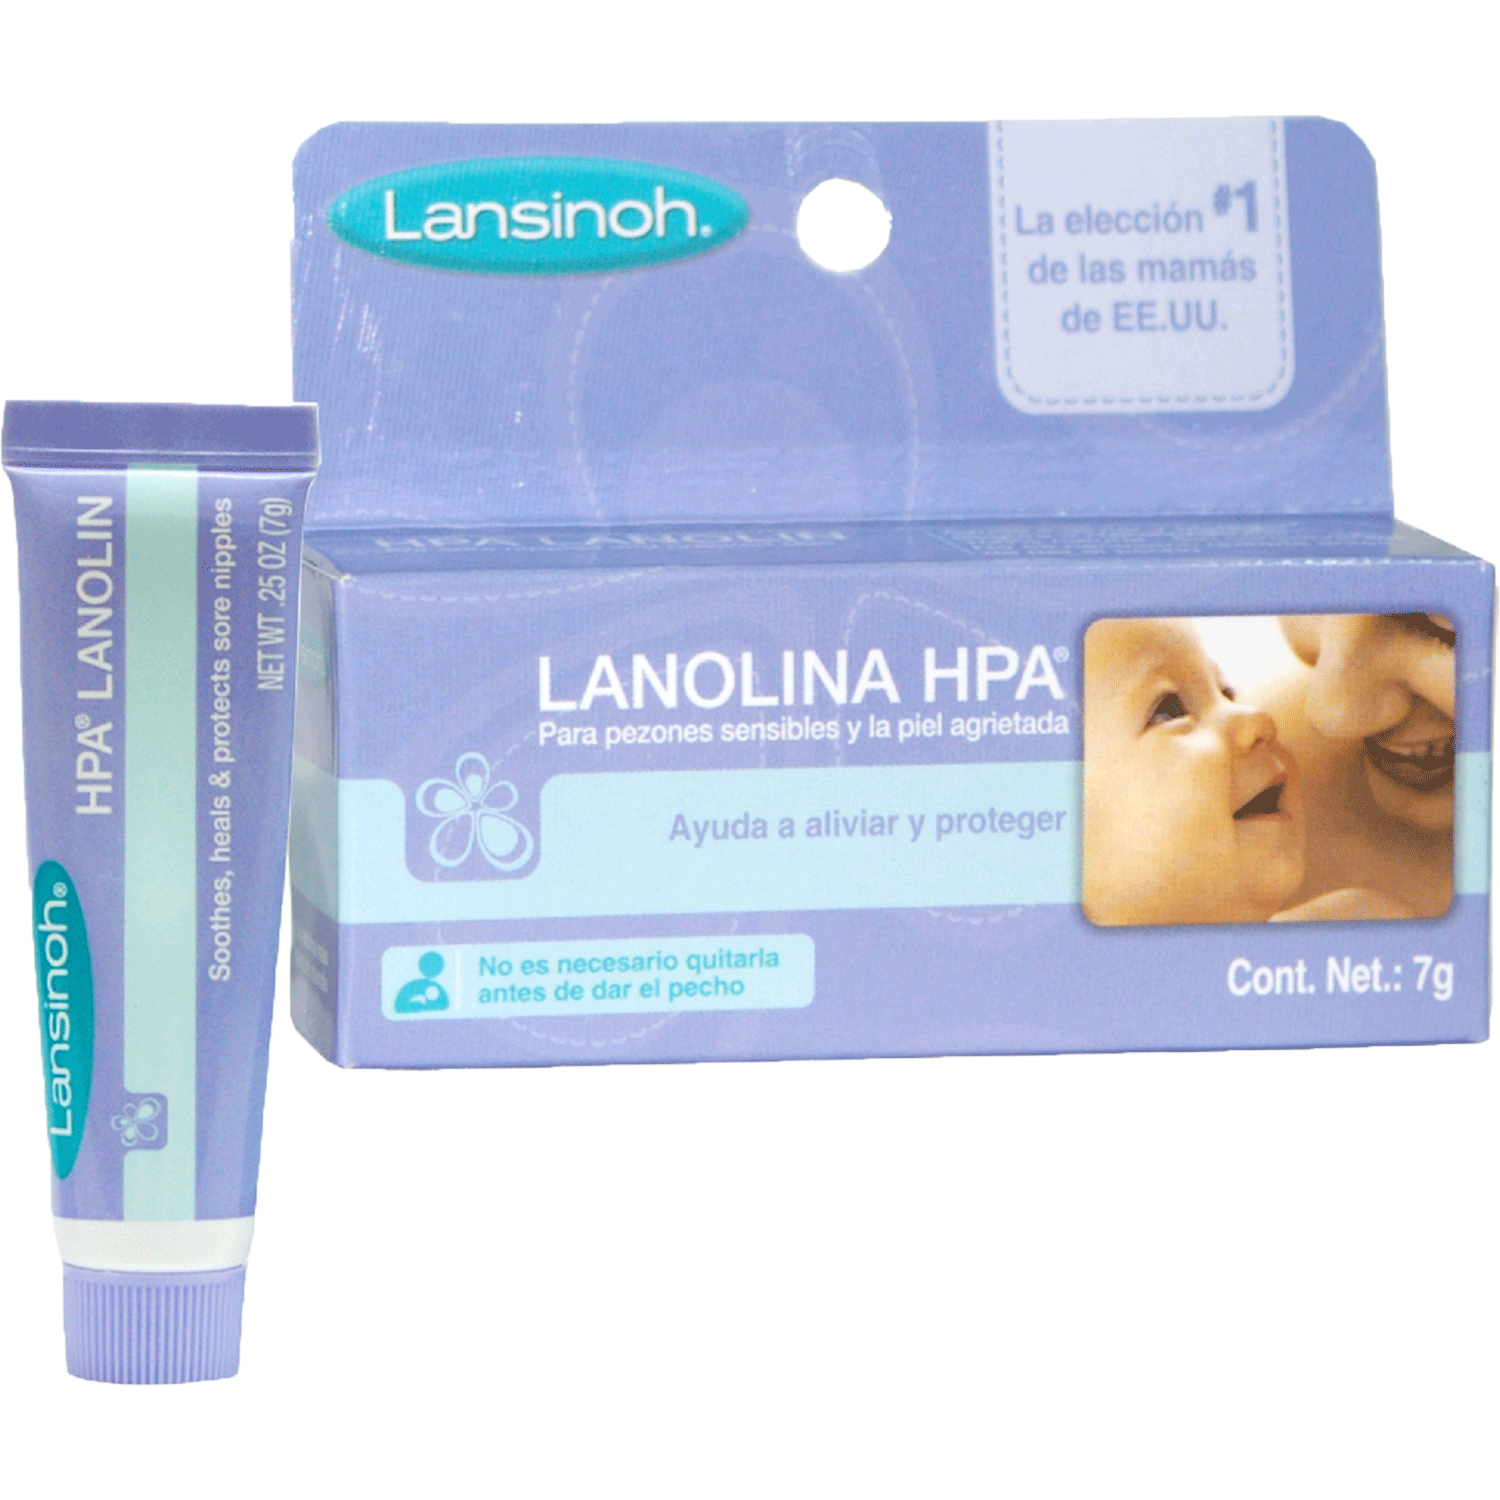 Crema Lanolina HPA 7 gr Lansinoh – Piugansu